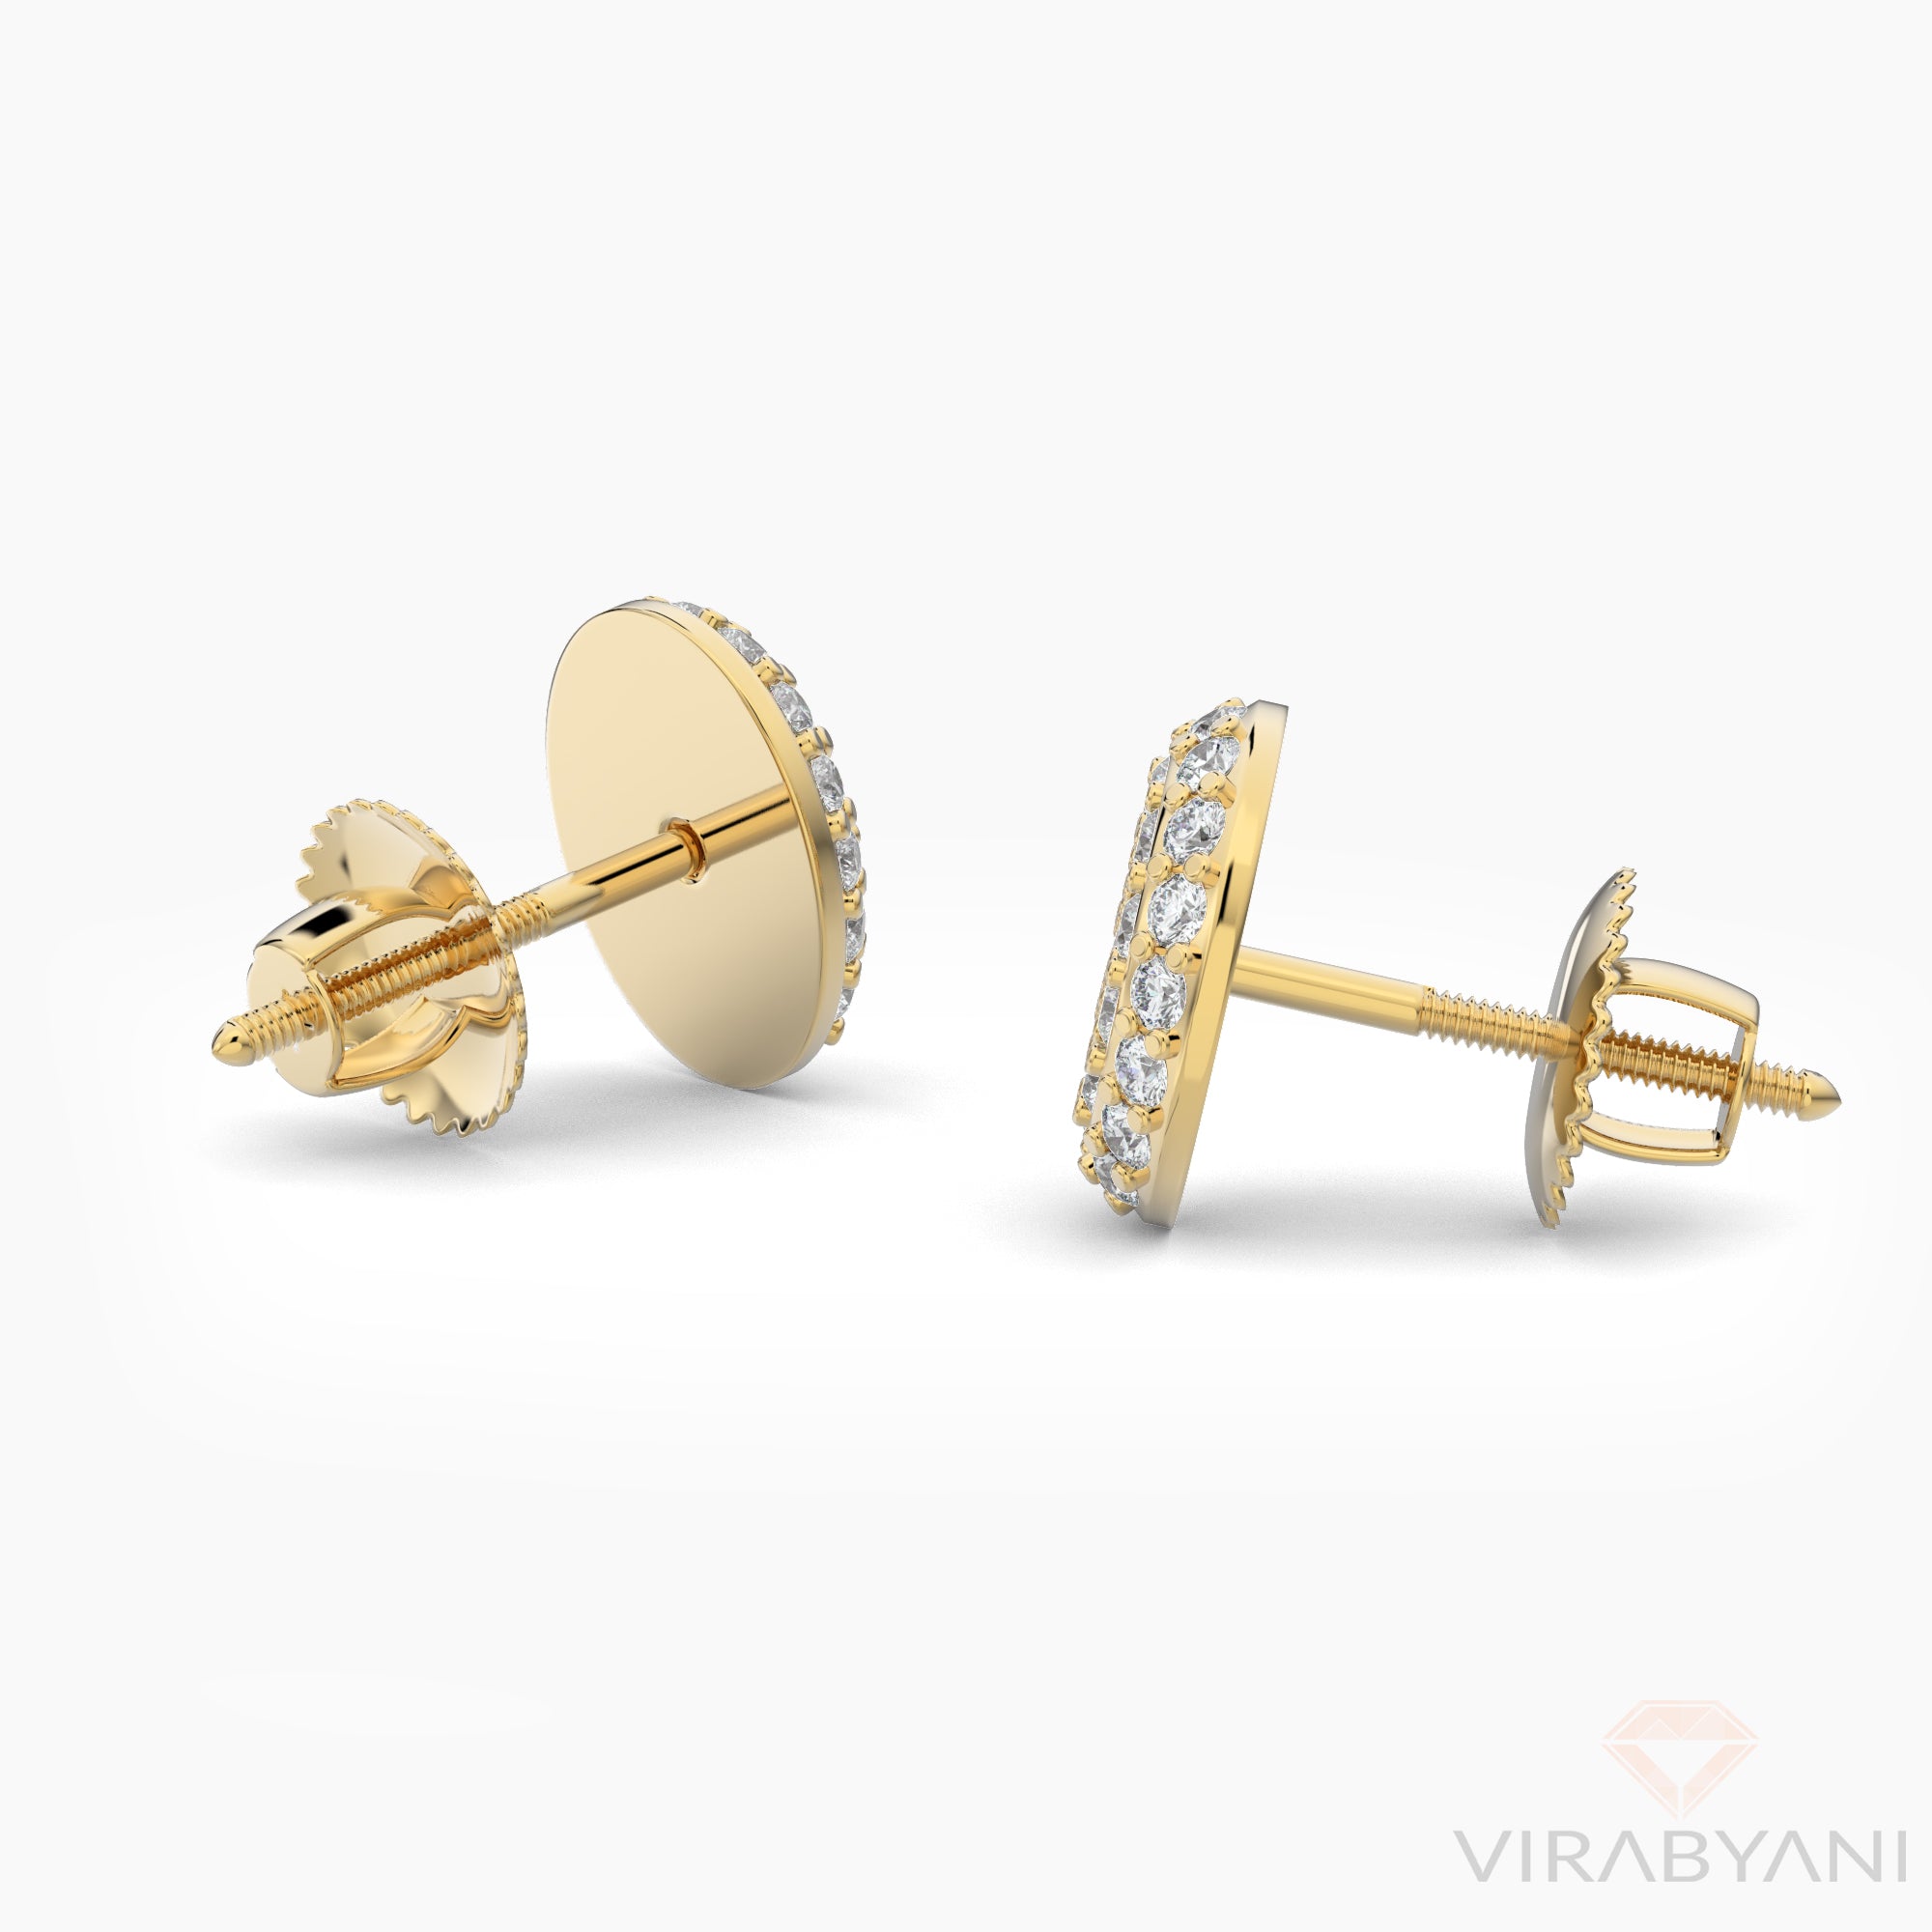 Oval Shaped AMoré Pavé Stud Earrings With 0.50 ct. Diamonds